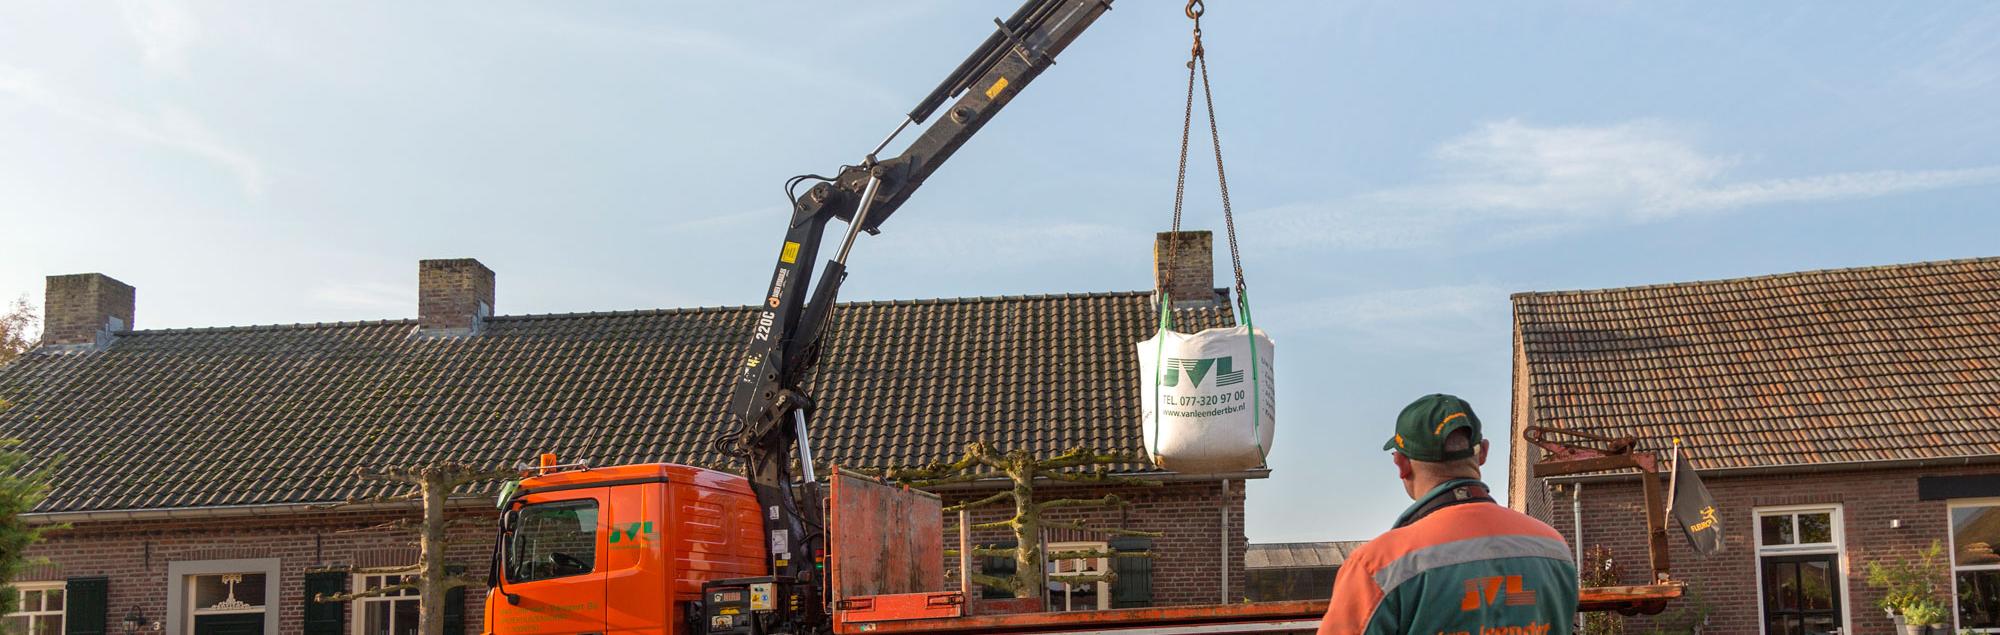 Container huren in Limburg?